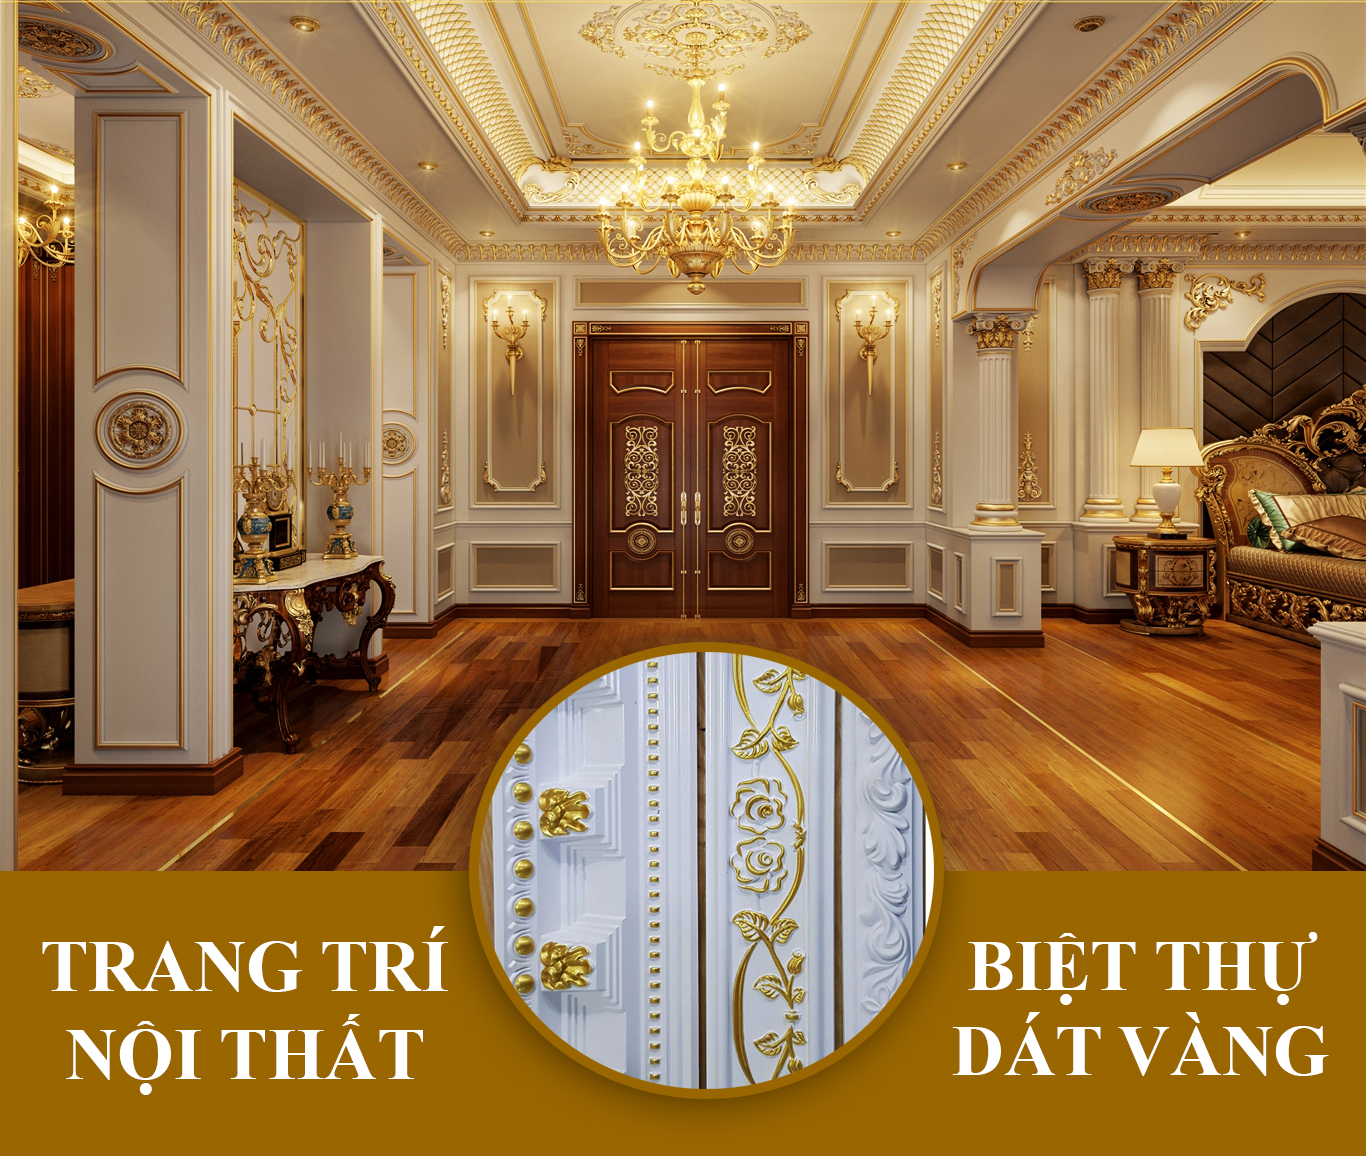 Các đại gia Việt so độ chịu chơi bằng các biệt thự dát vàng giá trị xa xỉ